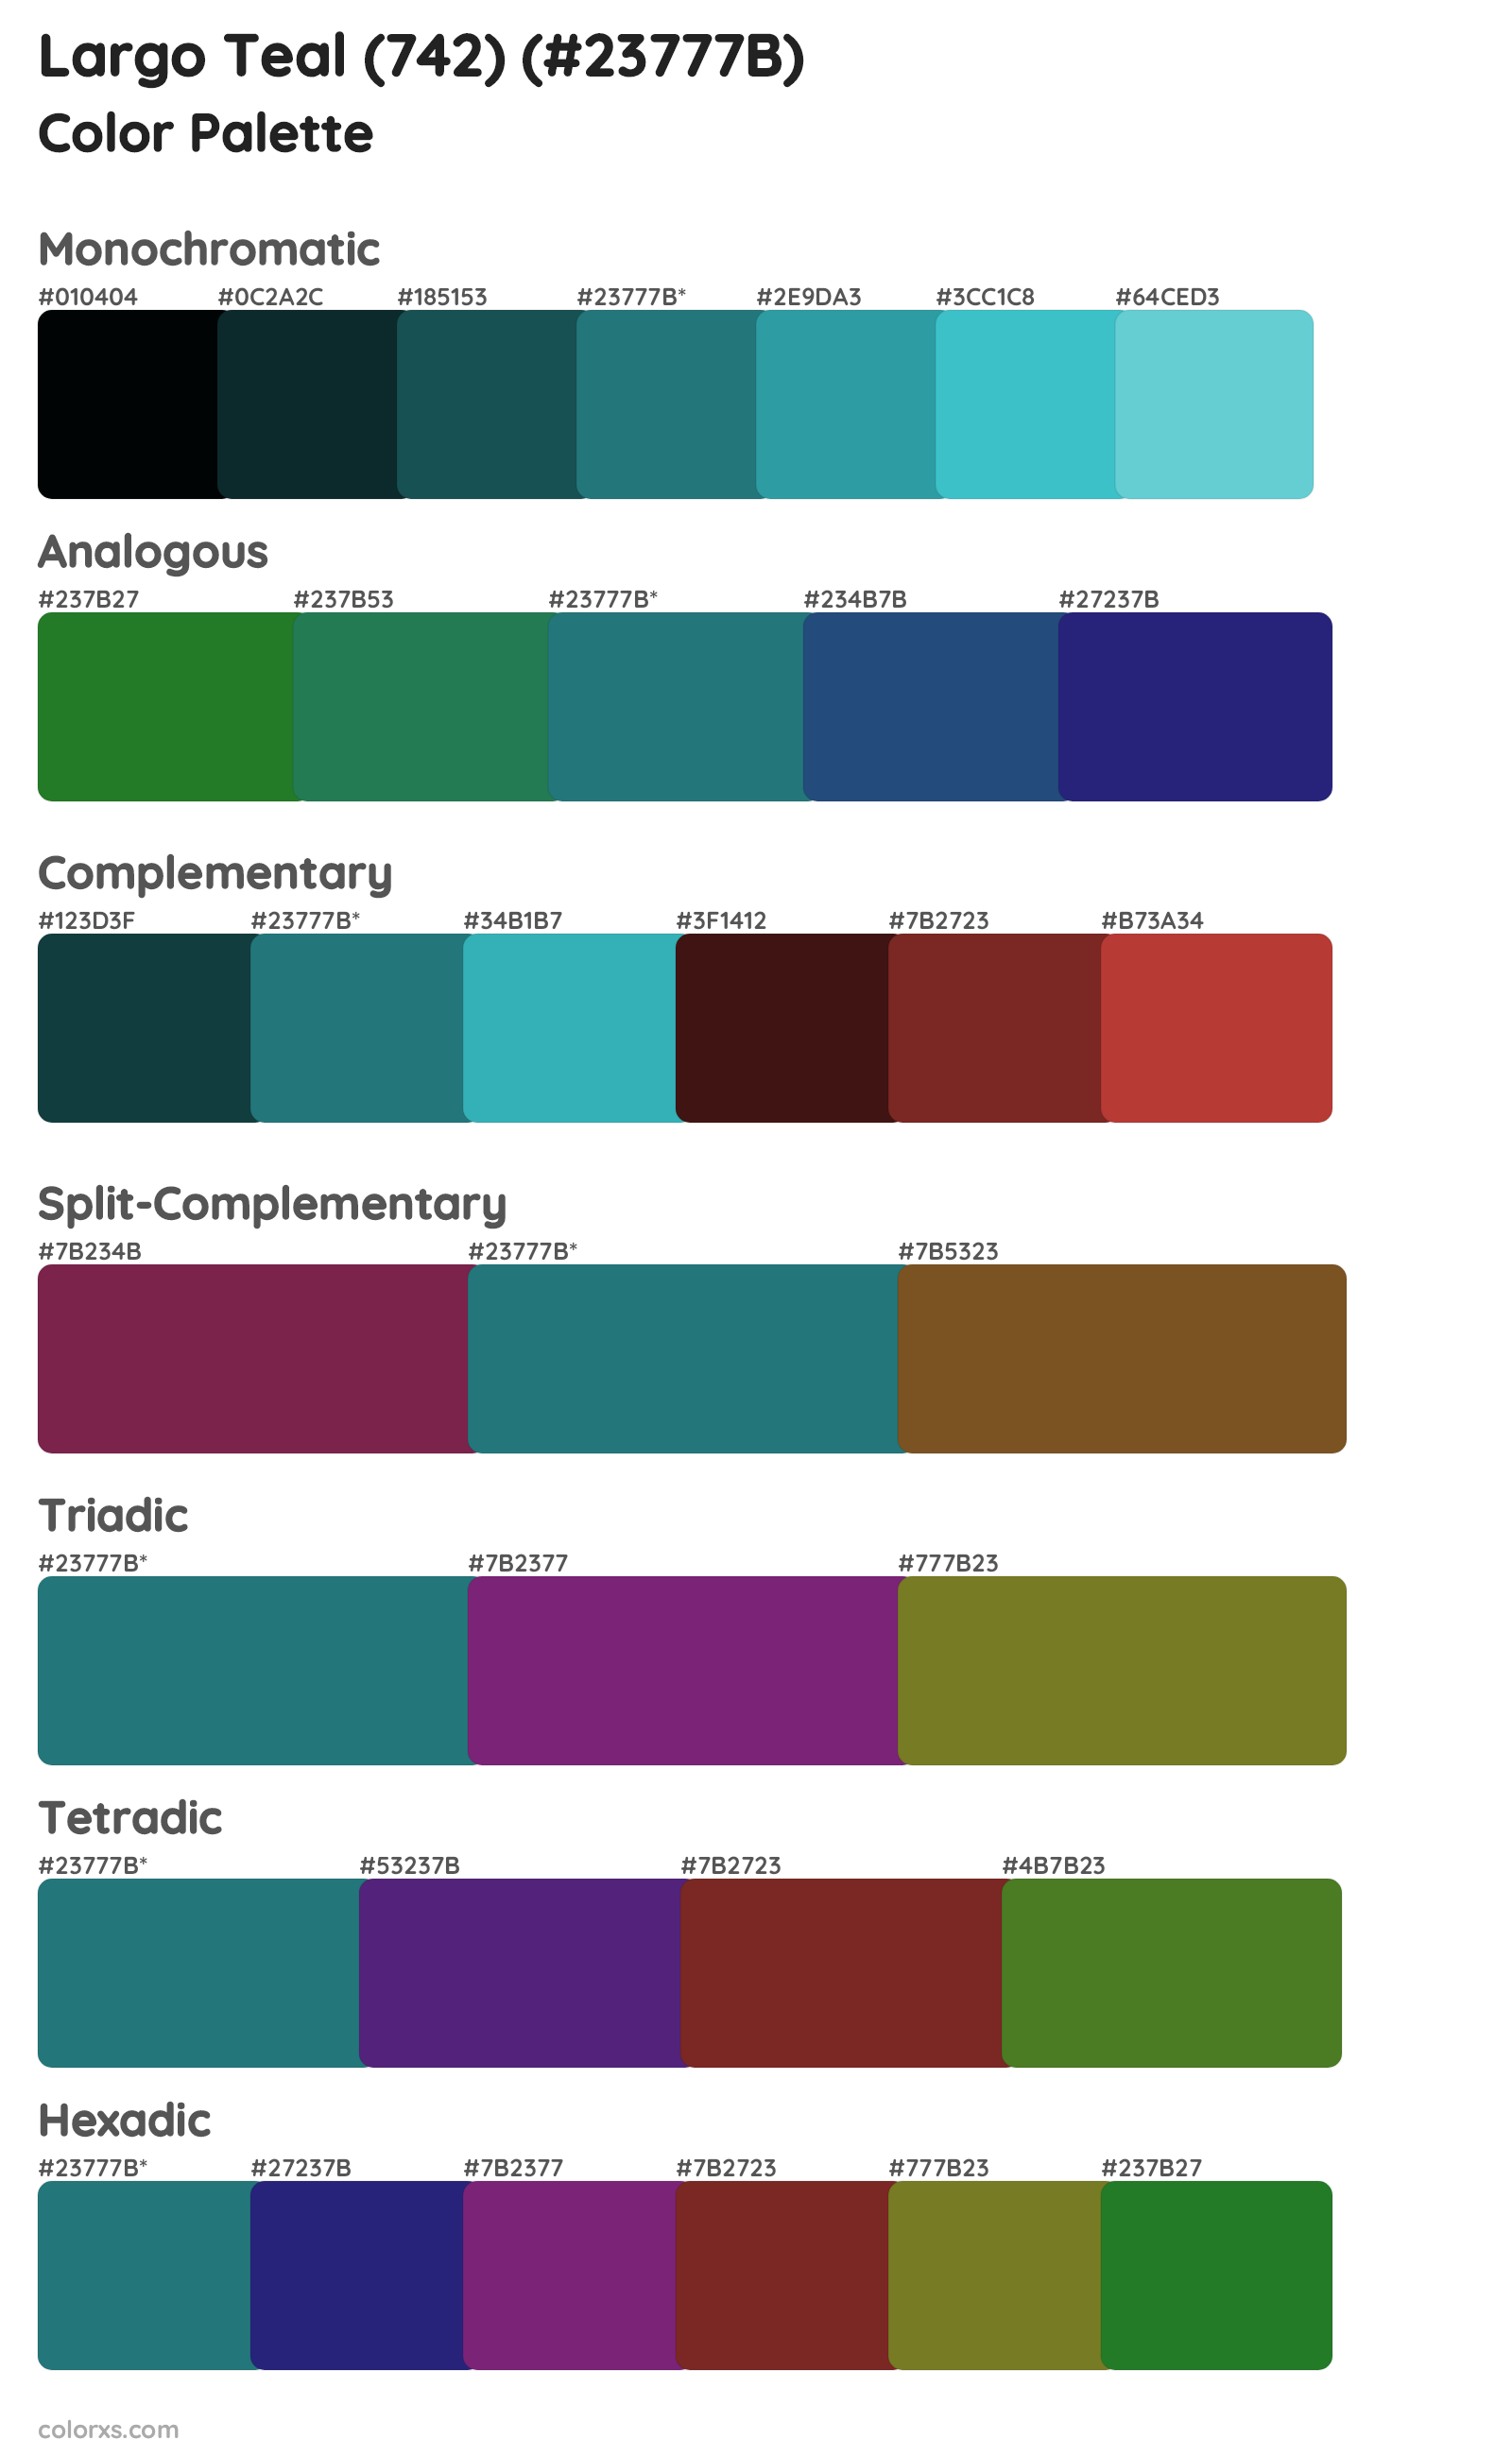 Largo Teal (742) Color Scheme Palettes